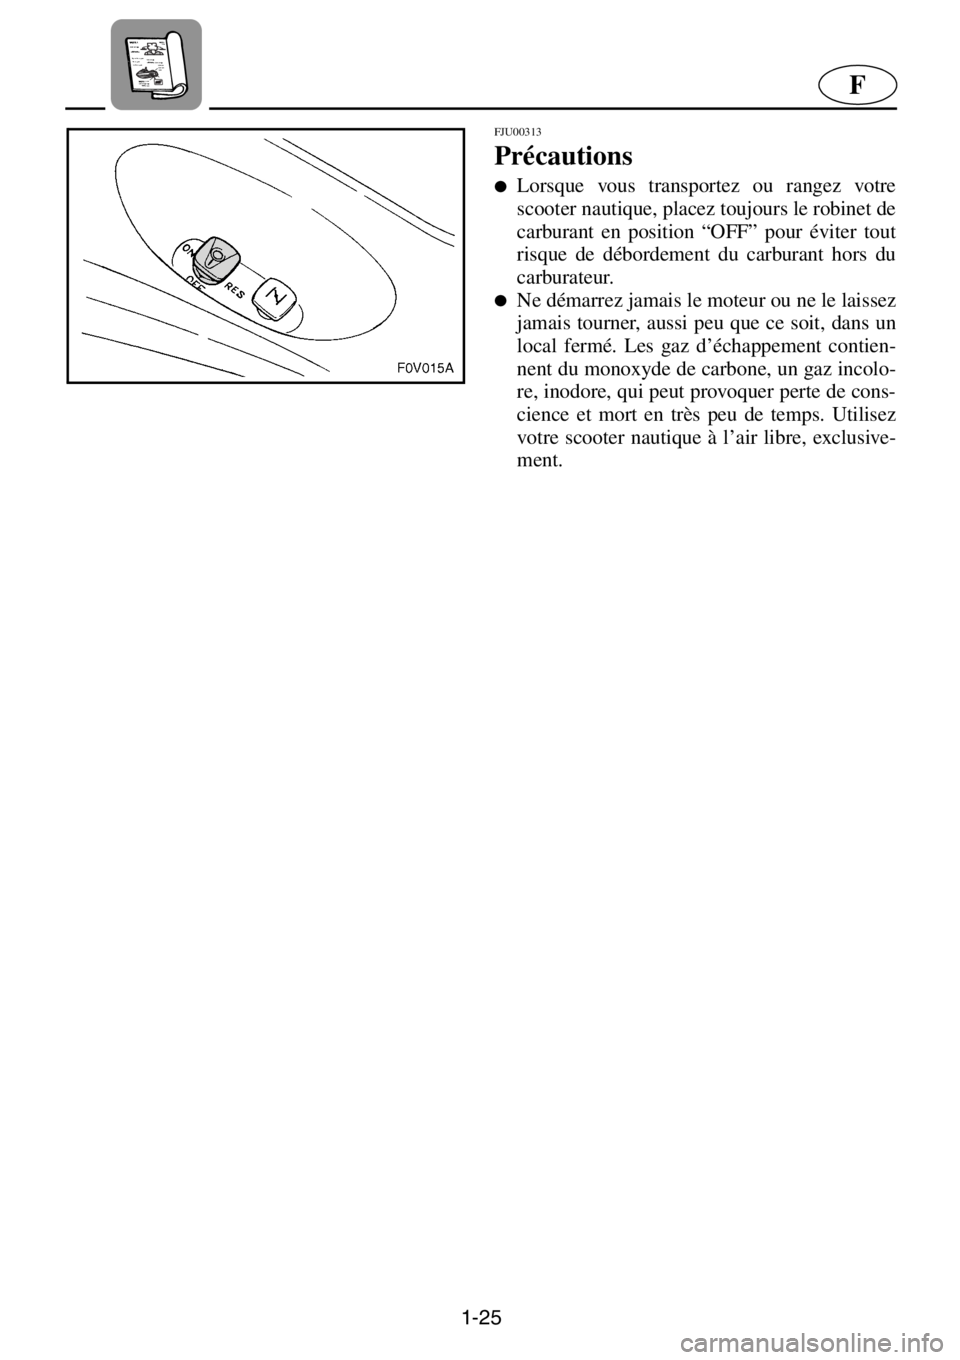 YAMAHA XL 1200 2001  Manuale de Empleo (in Spanish) 1-25
F
FJU00313 
Précautions
●Lorsque vous transportez ou rangez votre
scooter nautique, placez toujours le robinet de
carburant en position “OFF” pour éviter tout
risque de débordement du ca